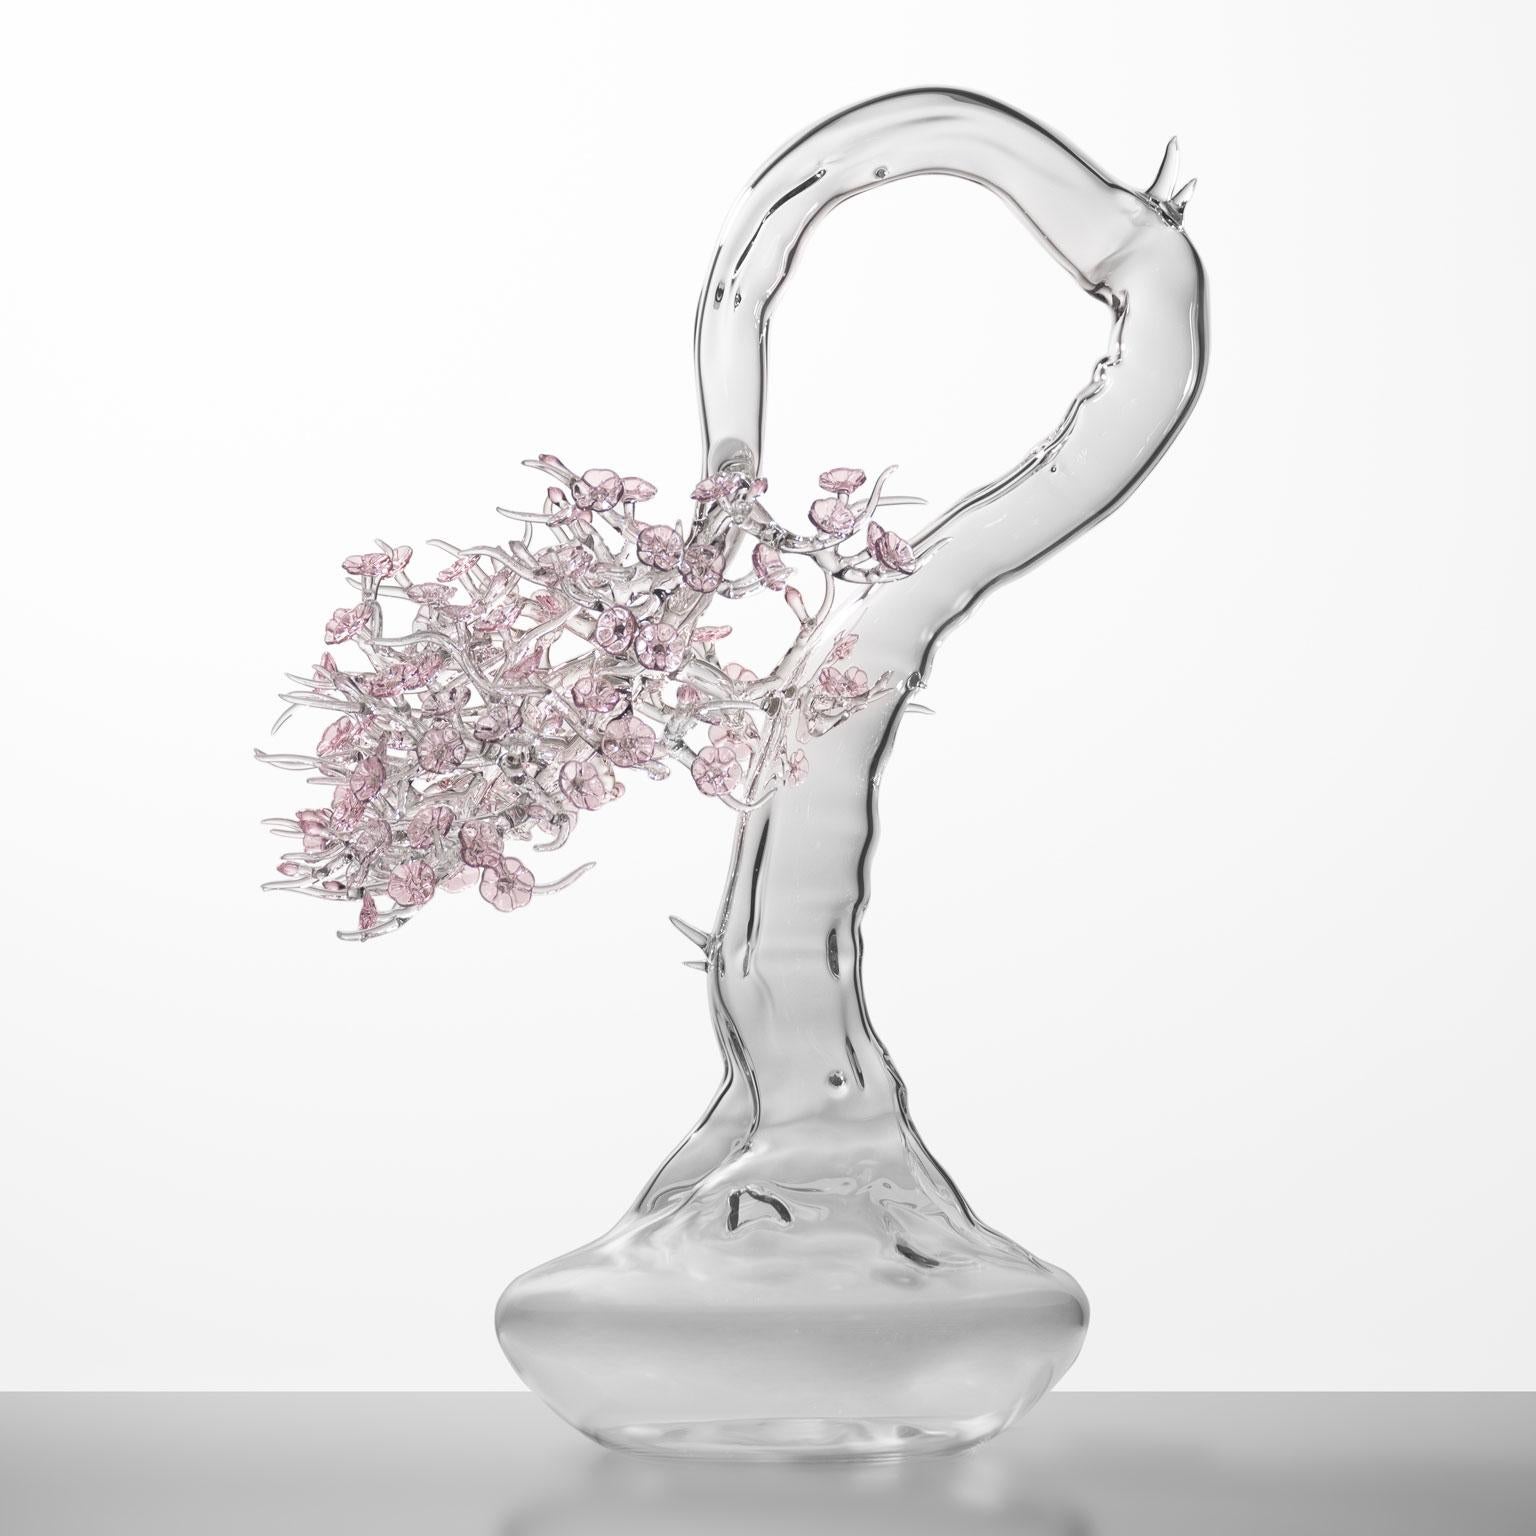 Sculpture en verre soufflé représentant un bonsaï en fleurs.

